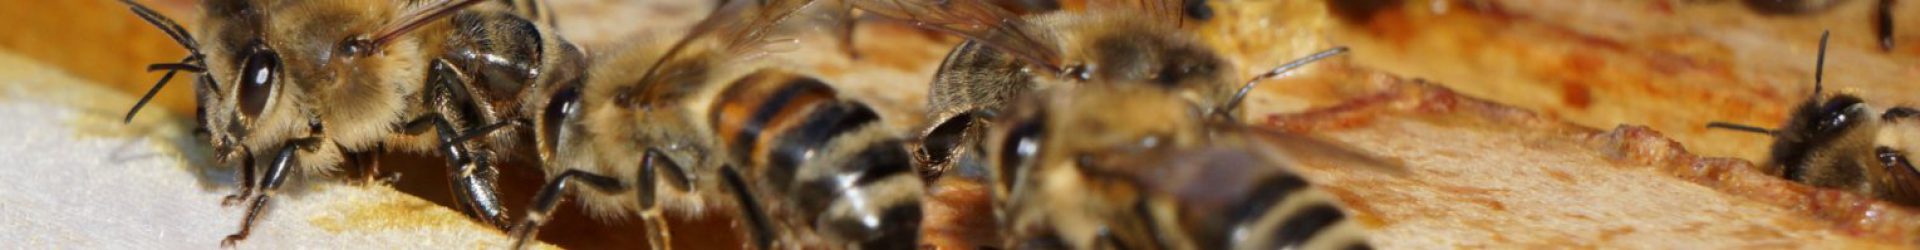 BMEL – Veranstaltungen und Messen – Bienen-Konferenz am 27.10.2016